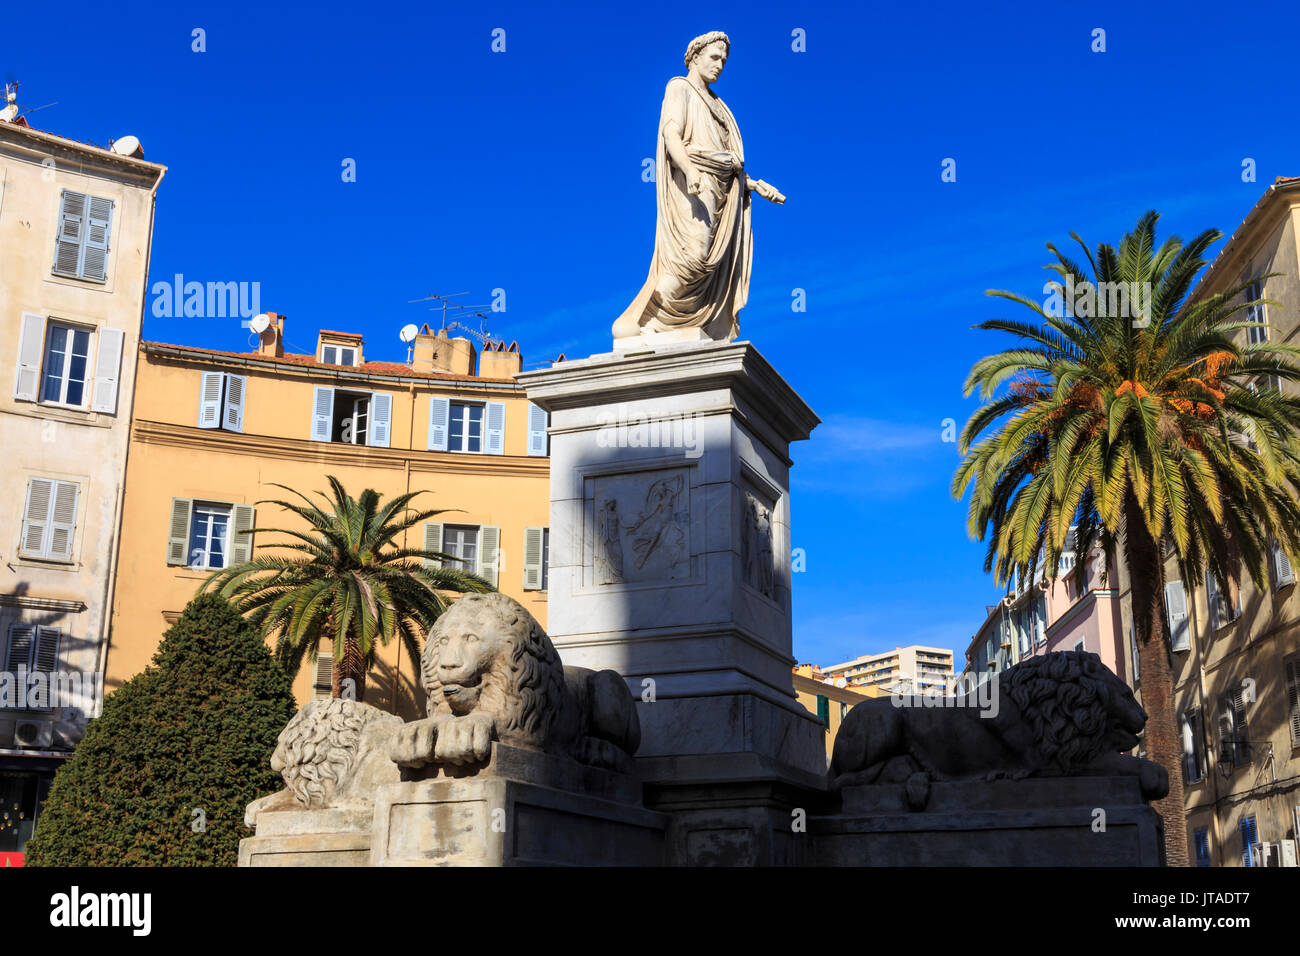 Statue de Napoléon en empereur romain, avec des lions et des palmiers, bâtiments pastel, Place Foch, Ajaccio, Corse, France, Europe Banque D'Images